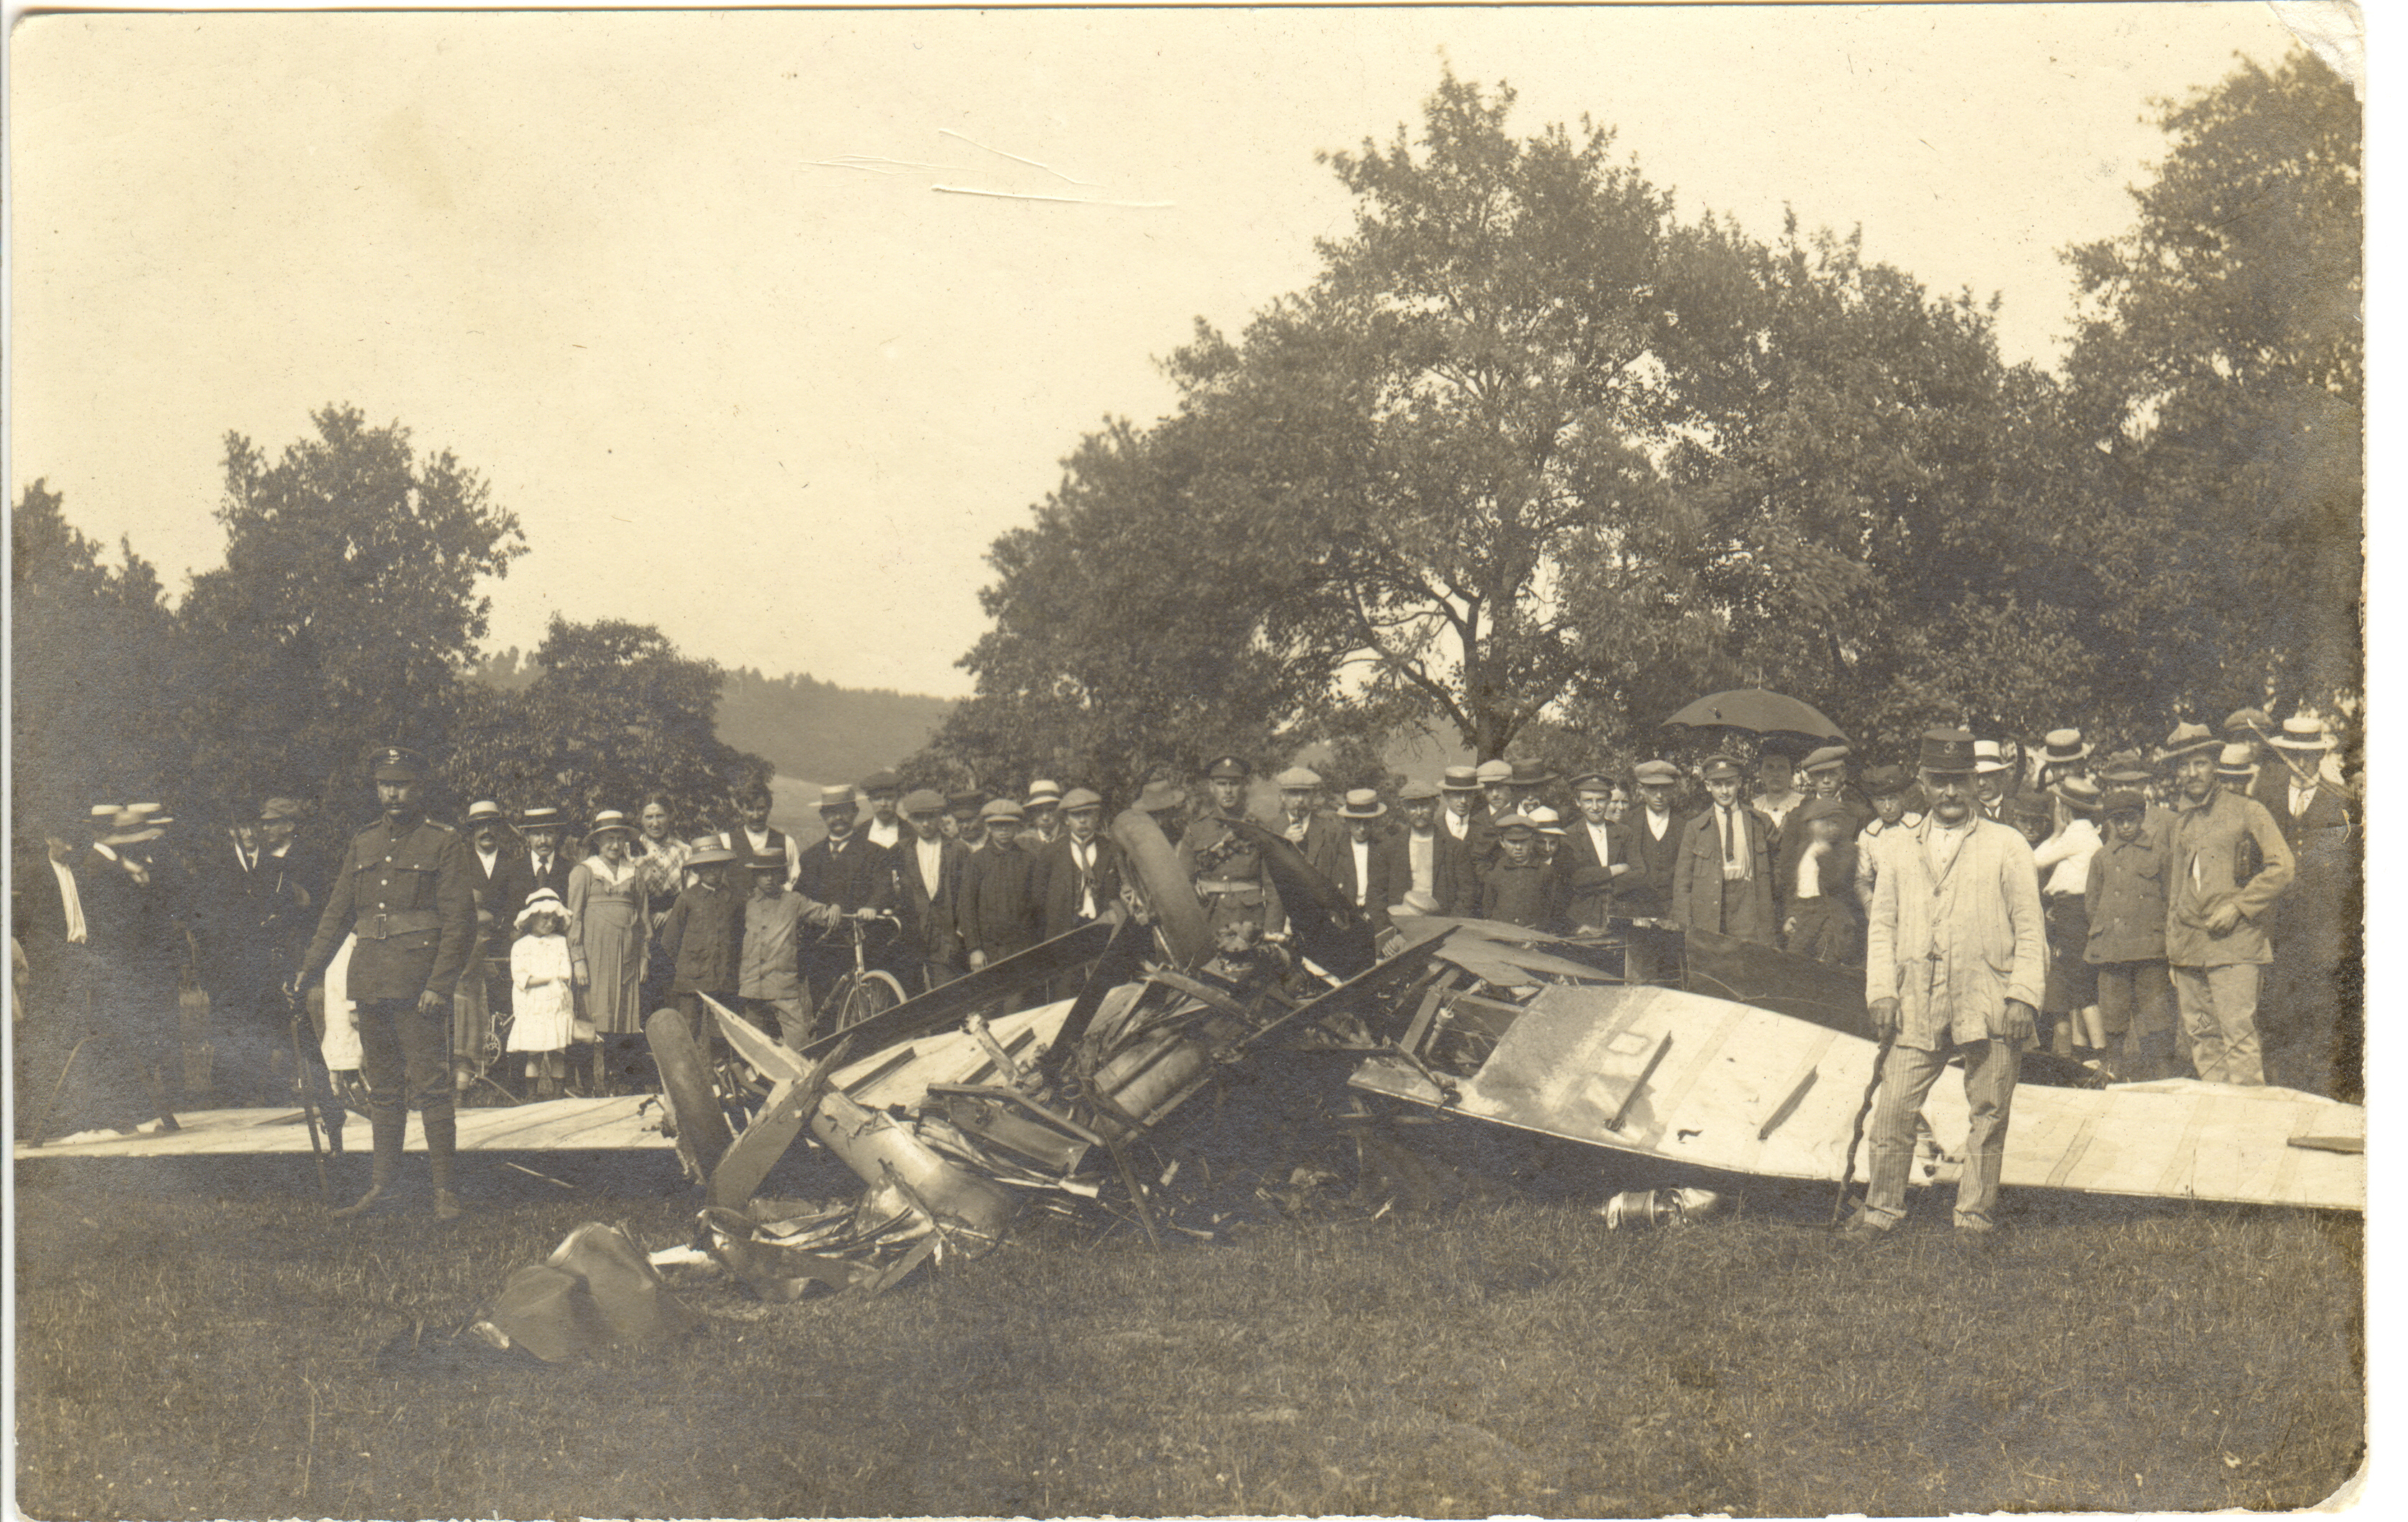 Belgique, Soye (Jodion) près de Franière (Floreffe) - Chute d'un avion du service postal  Cologne - Folkestone  le 8 juin 1919